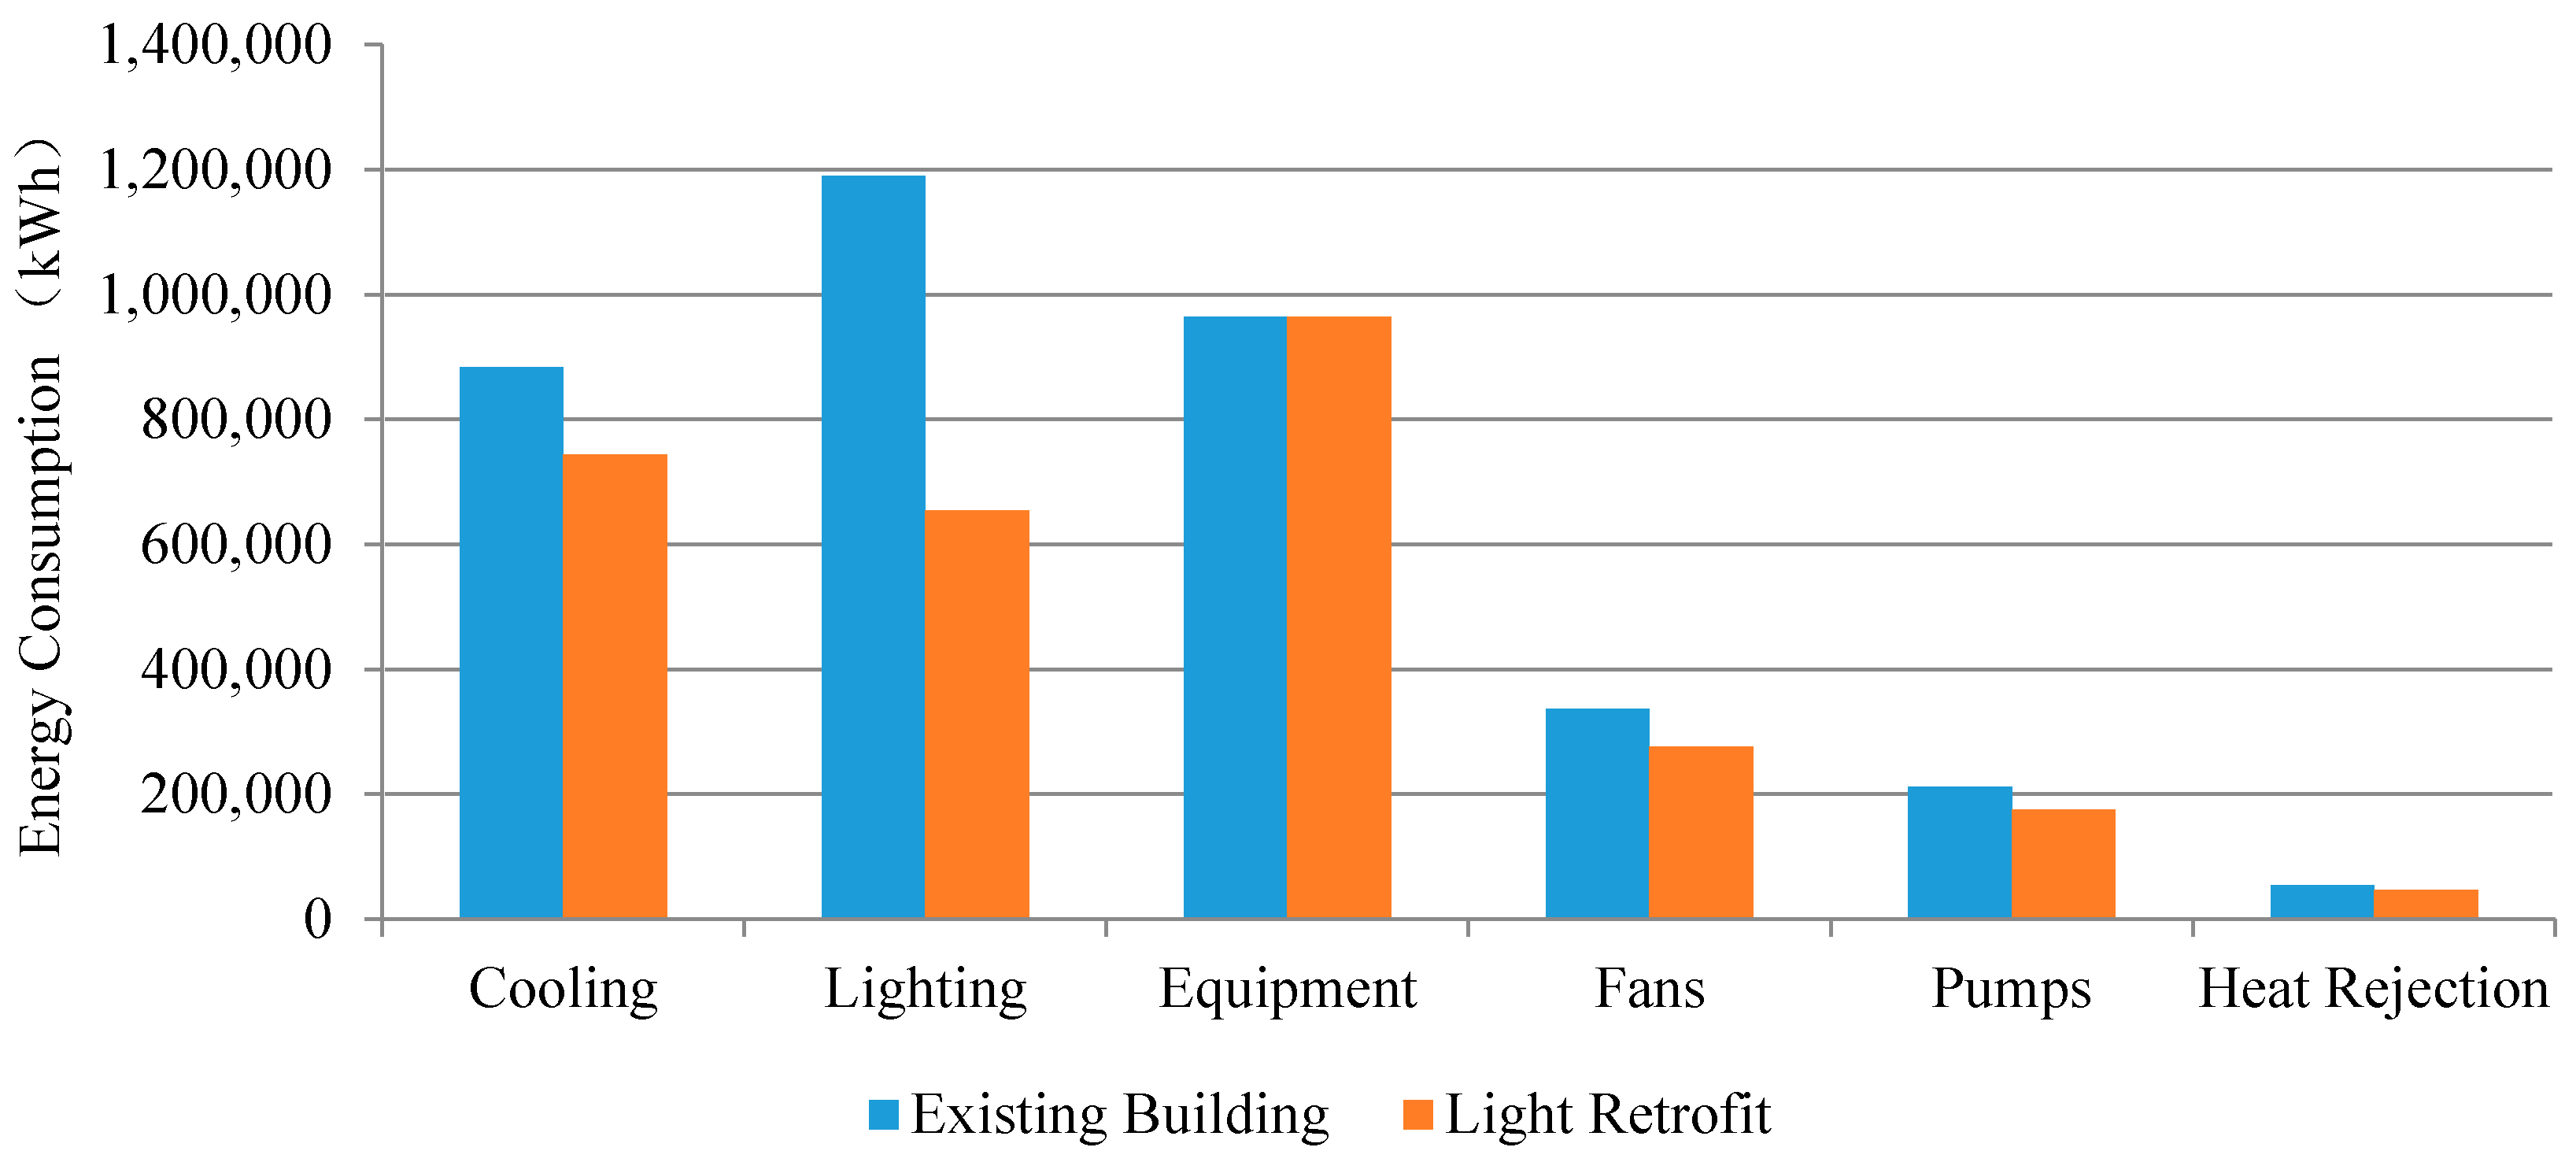 ashrae 90.1-2016 lighting power density table